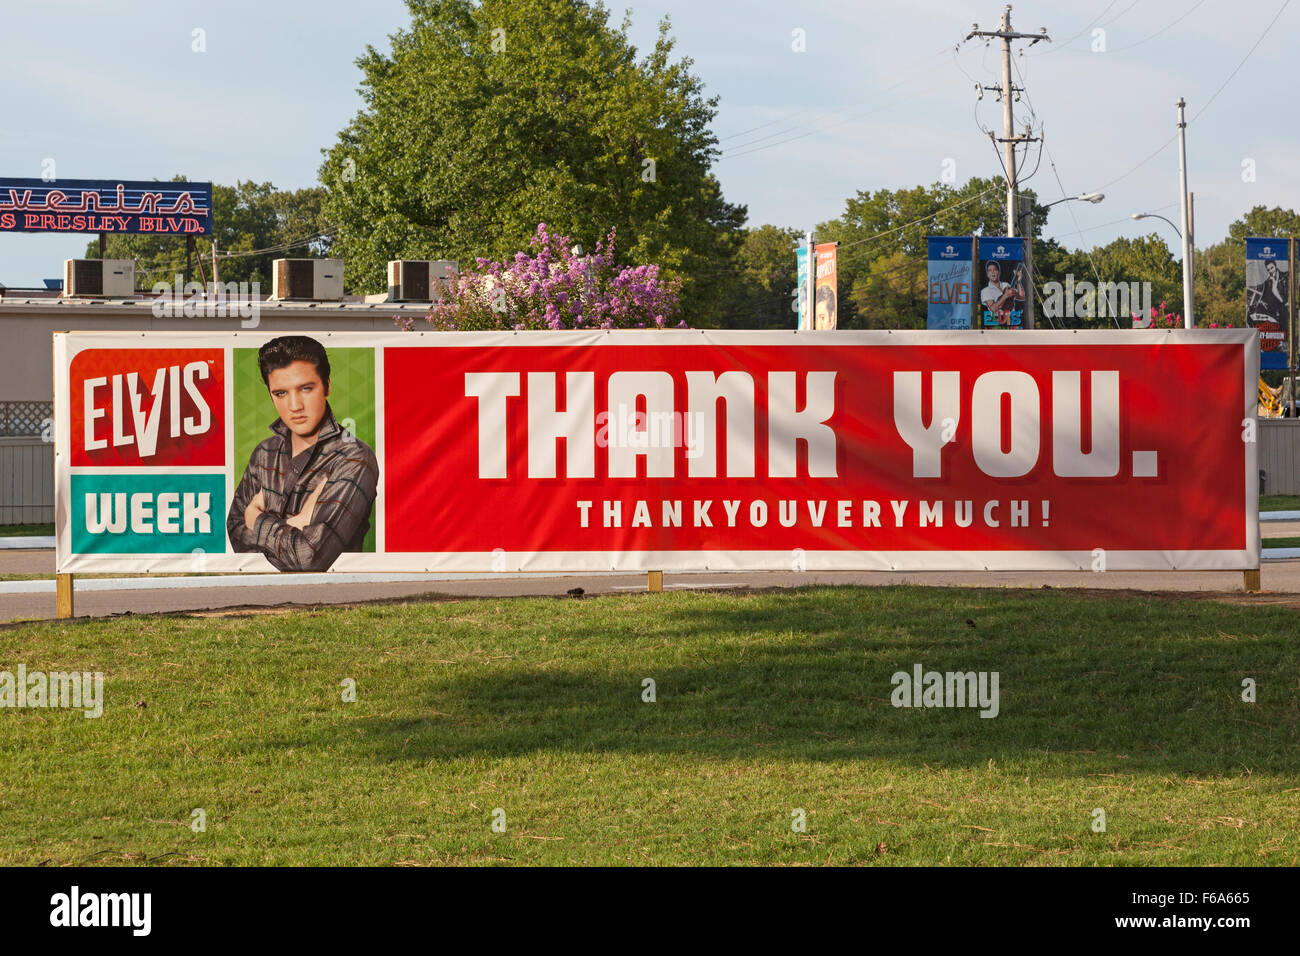 Merci beaucoup, la semaine 2015 Elvis Graceland, Memphis, Tennessee Banque D'Images